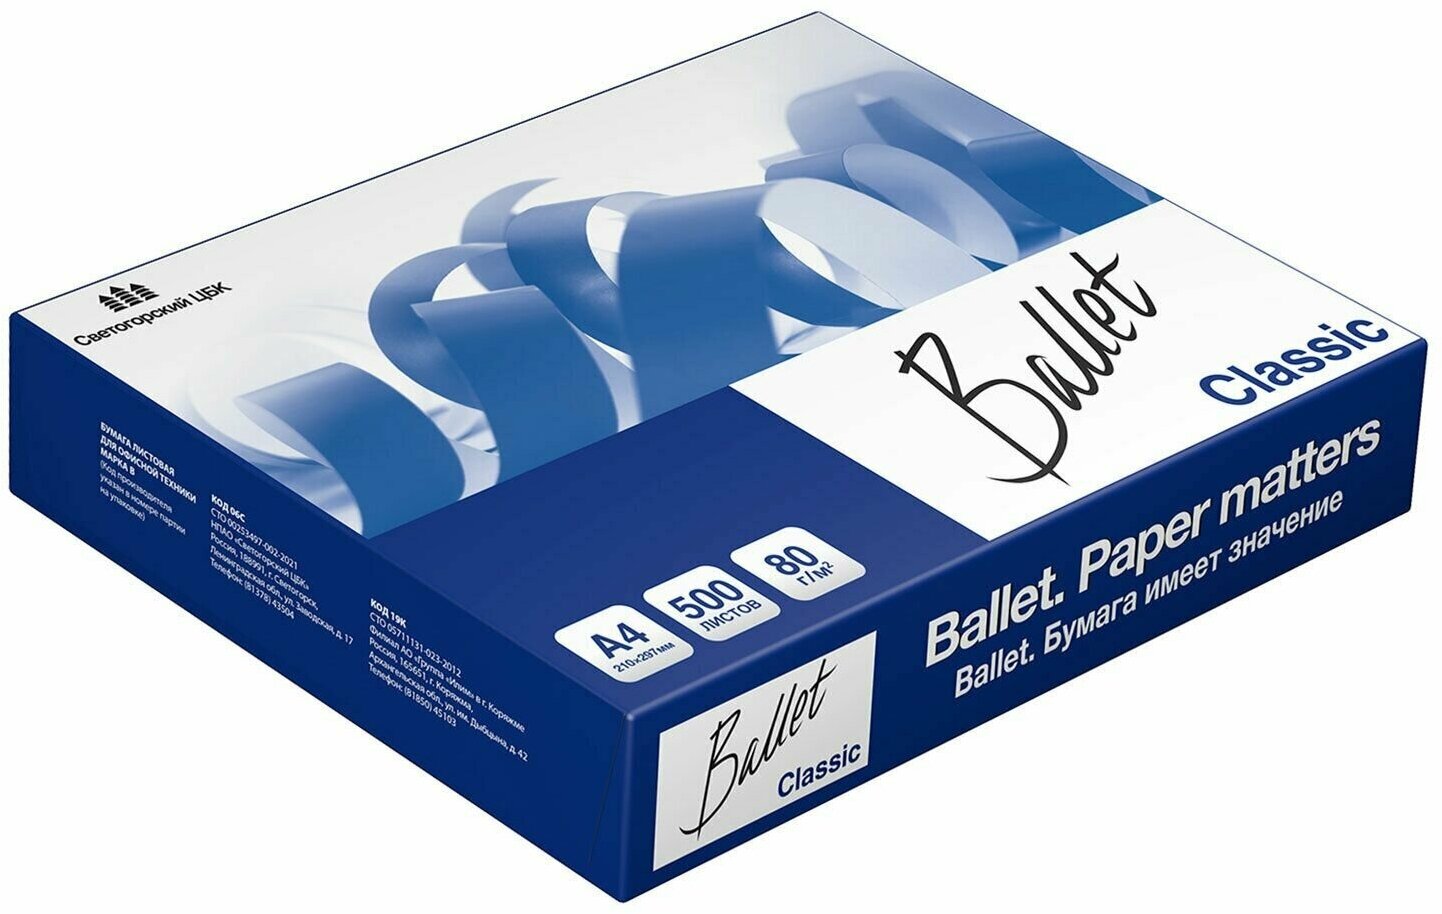 Бумага International Paper Ballet Classic Балет Классик А4 A4/80г/м2/500л./белый CIE153% универсальн 5 шт./кор. - фото №6